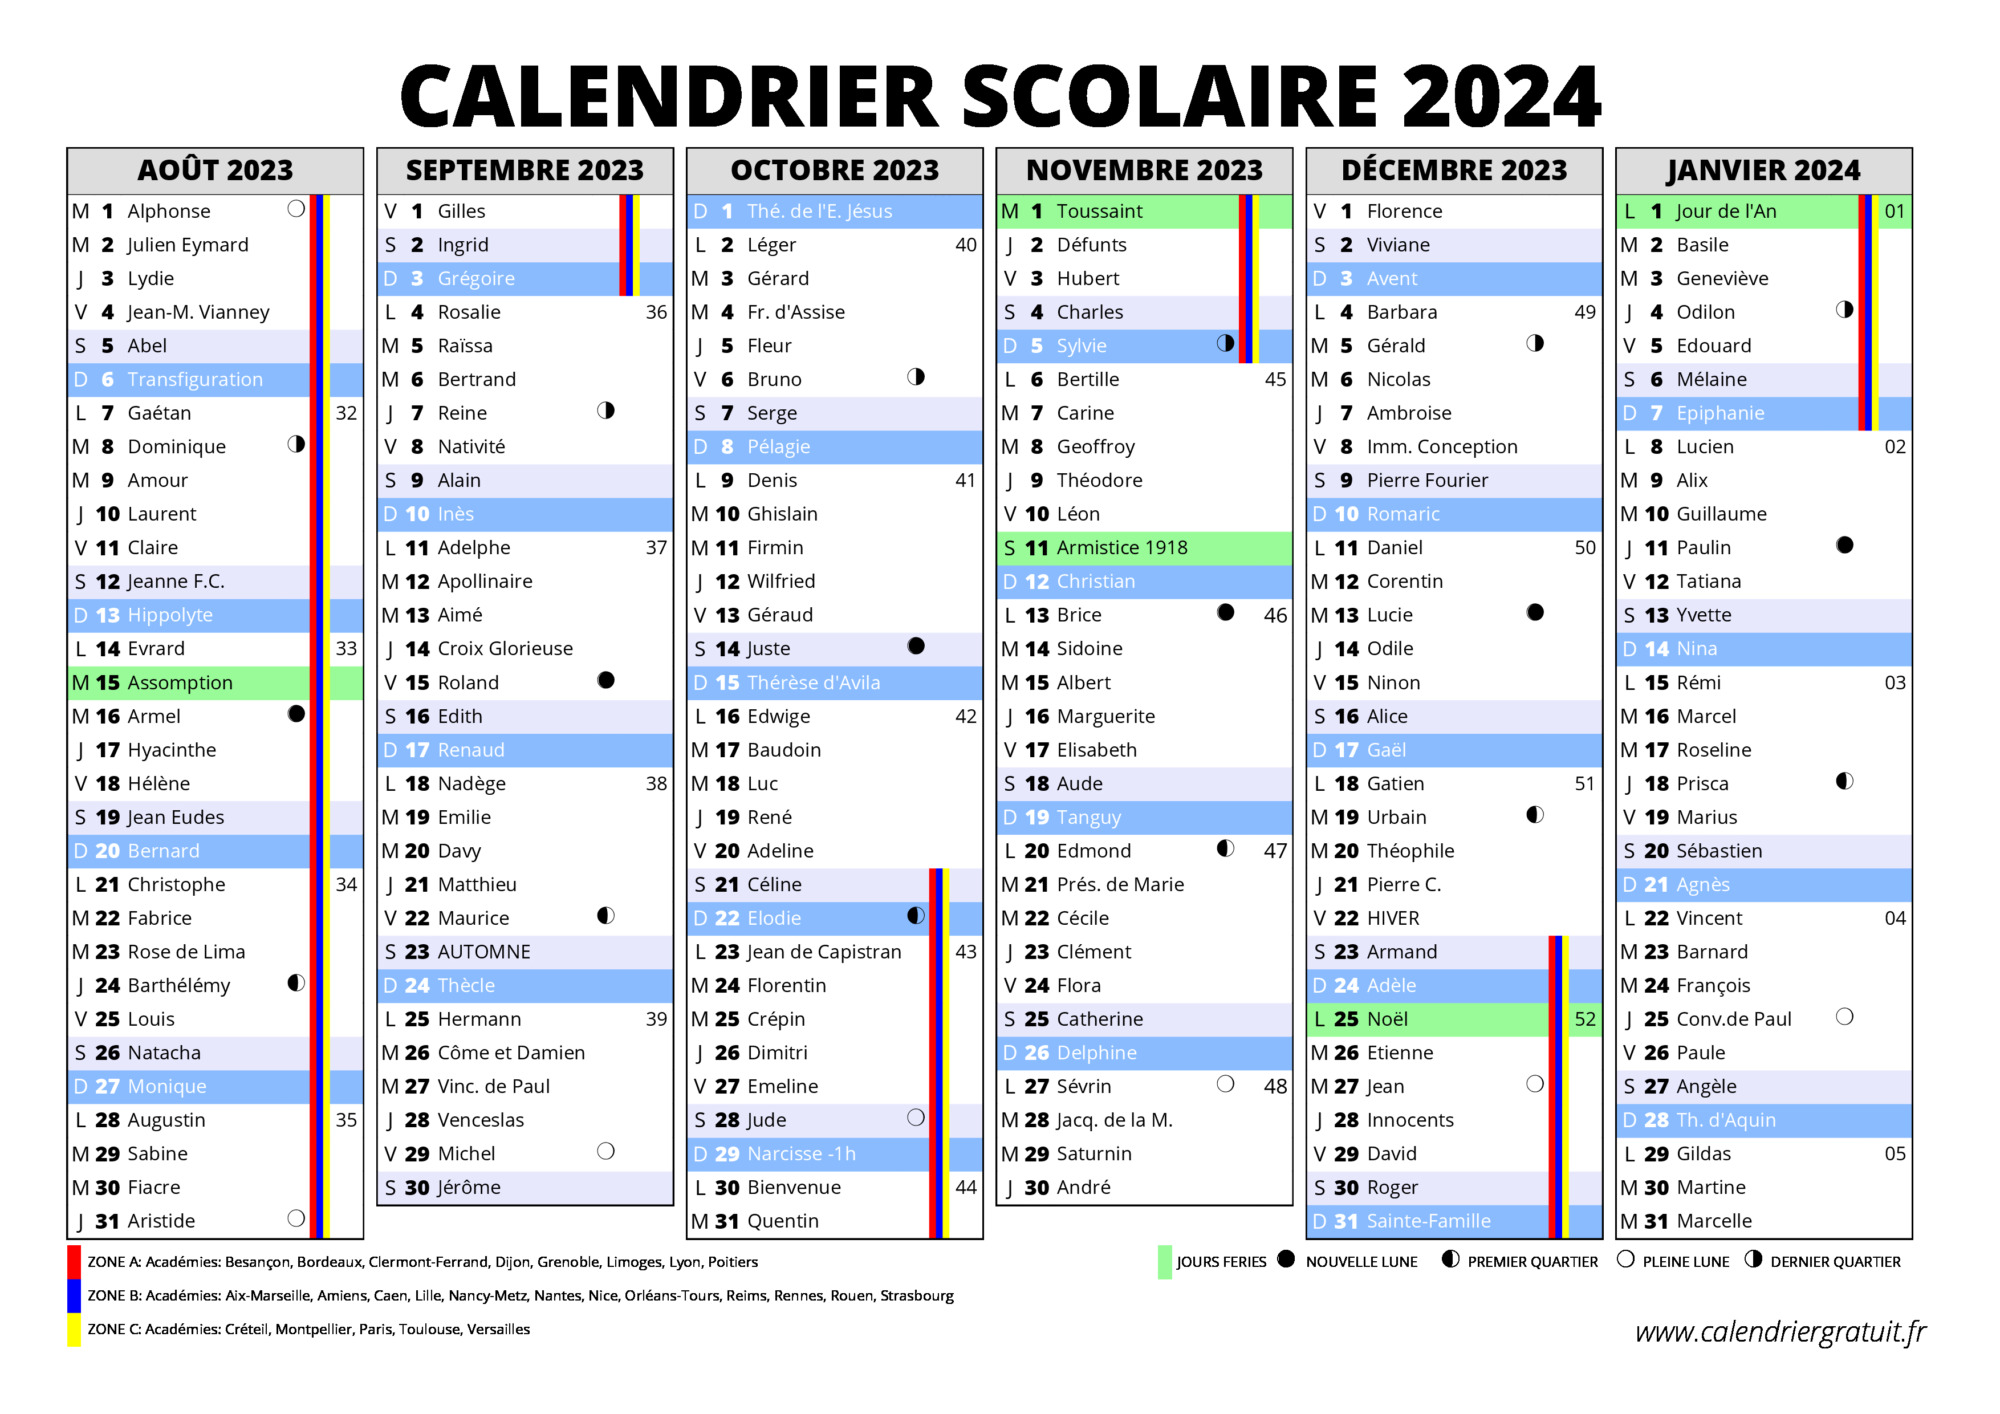 Le calendrier scolaire 2023-2024 à imprimer